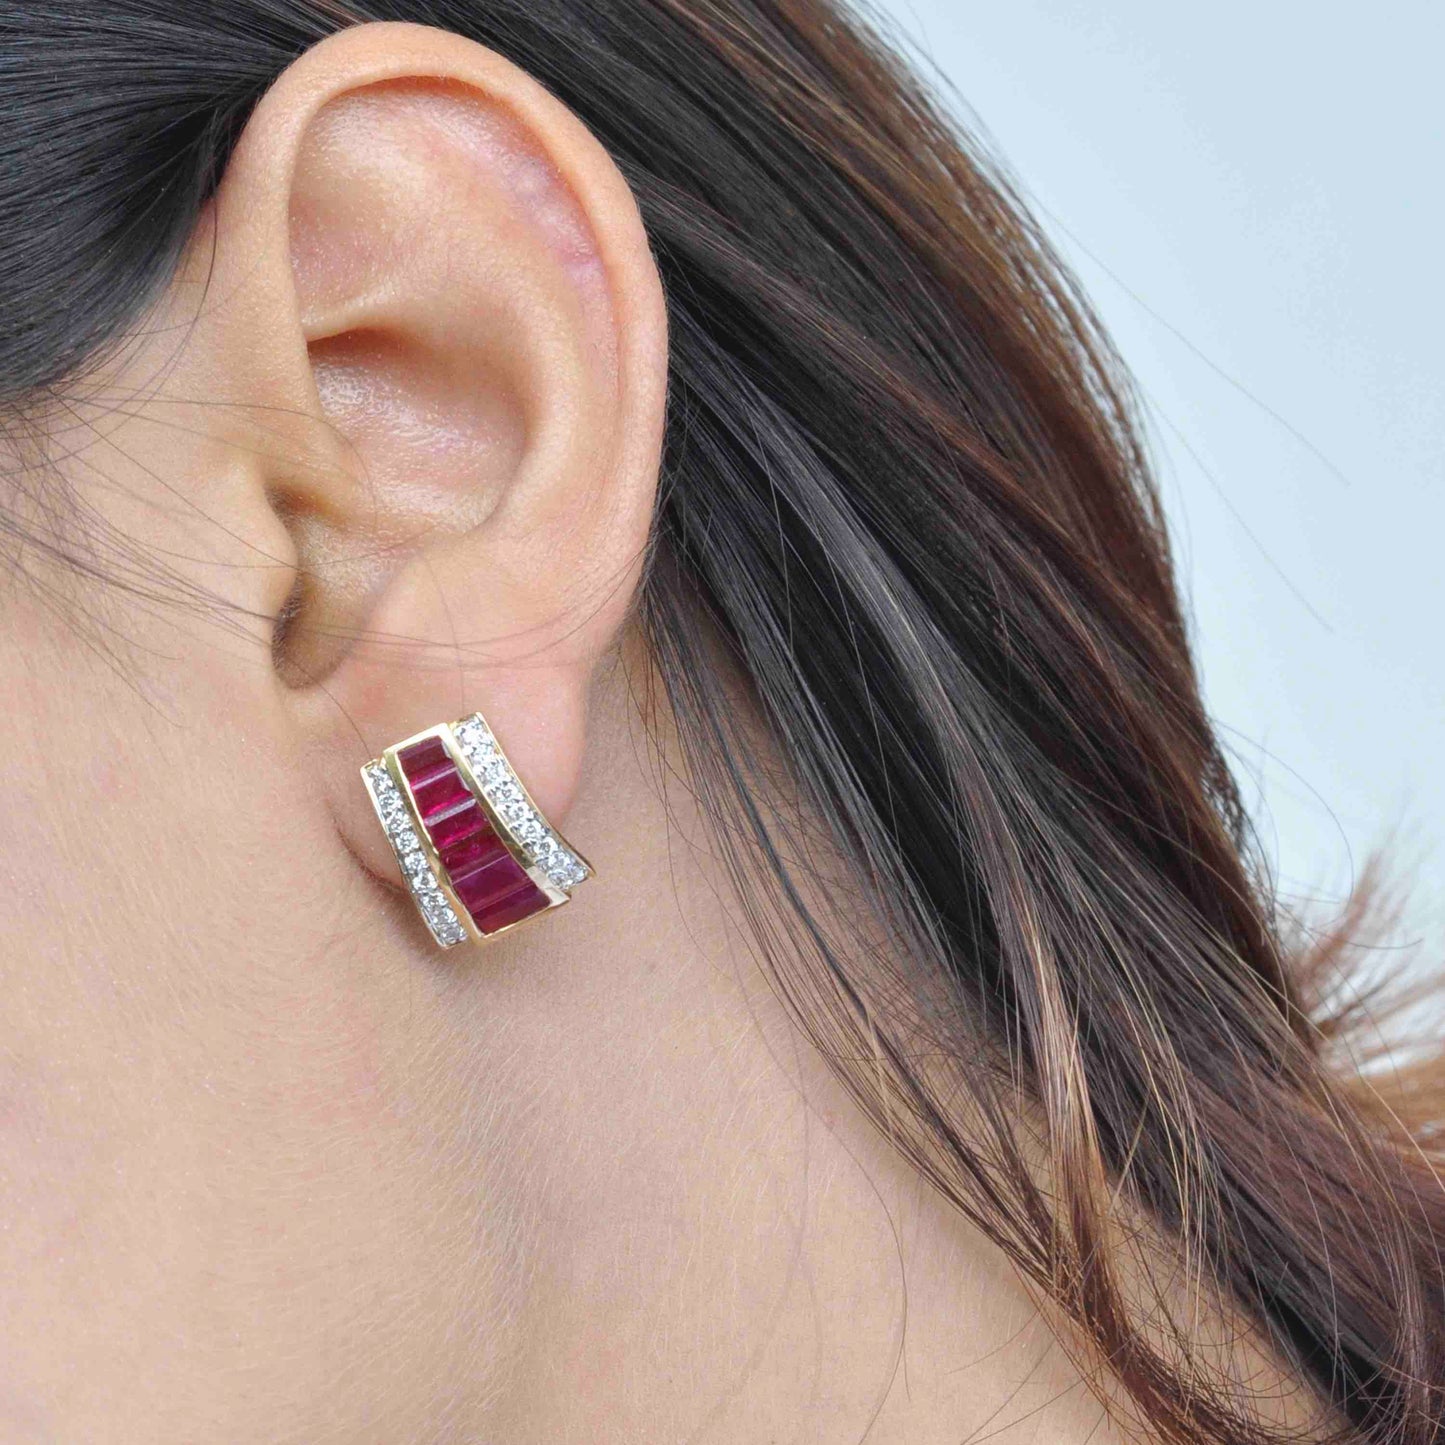 How to wear Ruby Baguette Stud Earrings